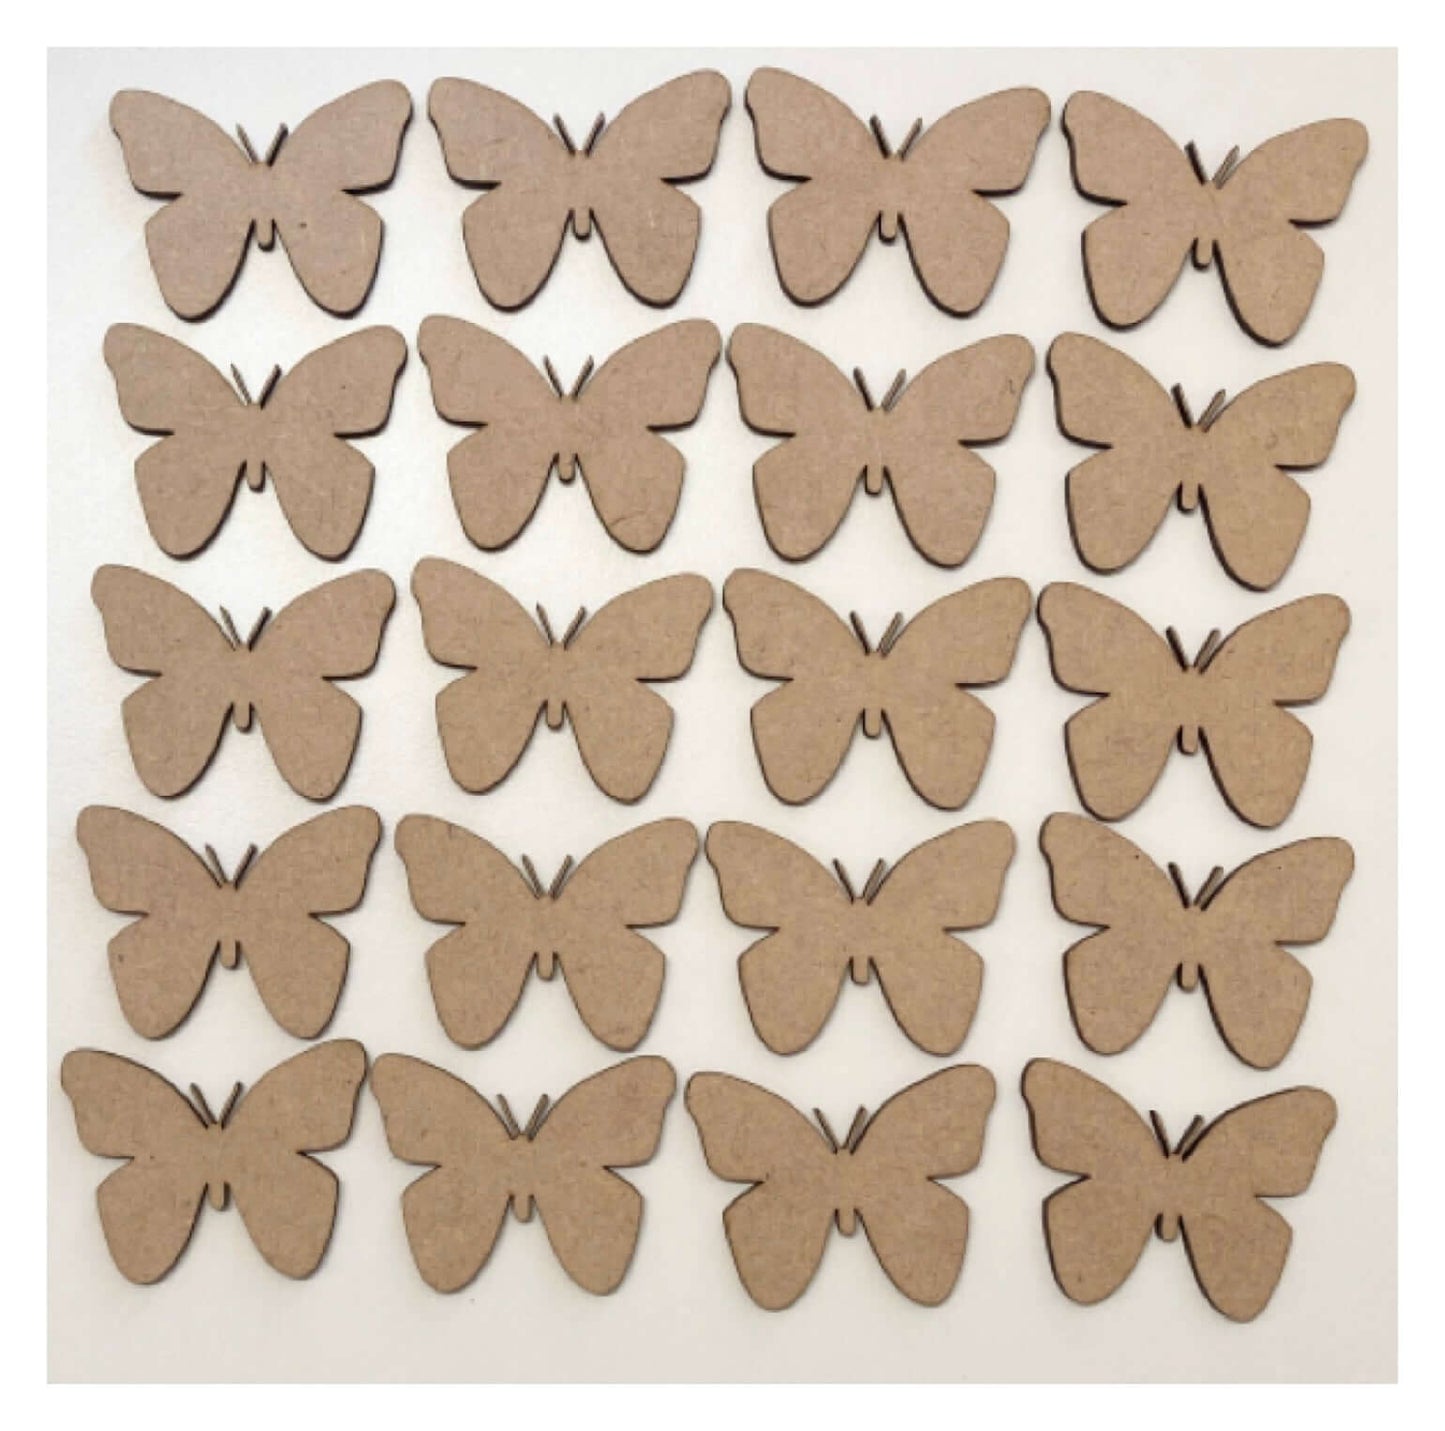 Butterfly Butterflies 6cm Set of 20 MDF Shape DIY Raw Cut Out Art Craft Décor